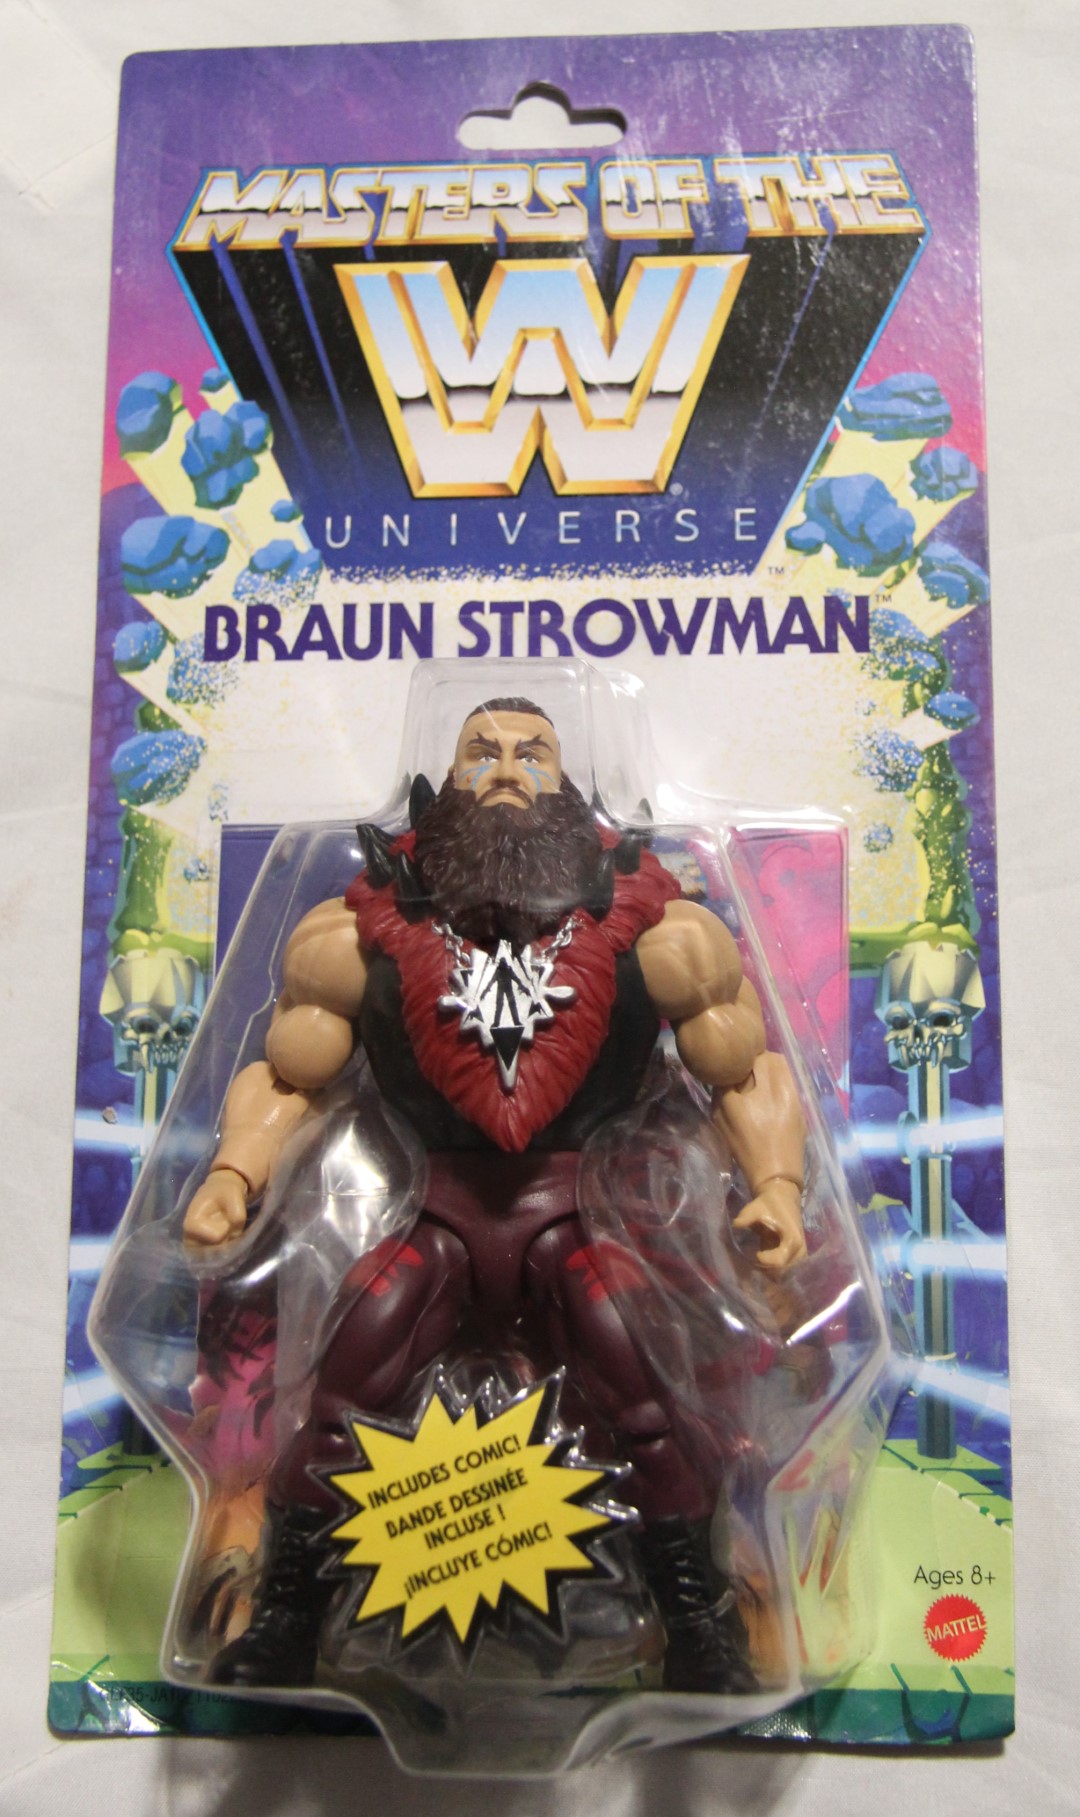 Braun Strowman